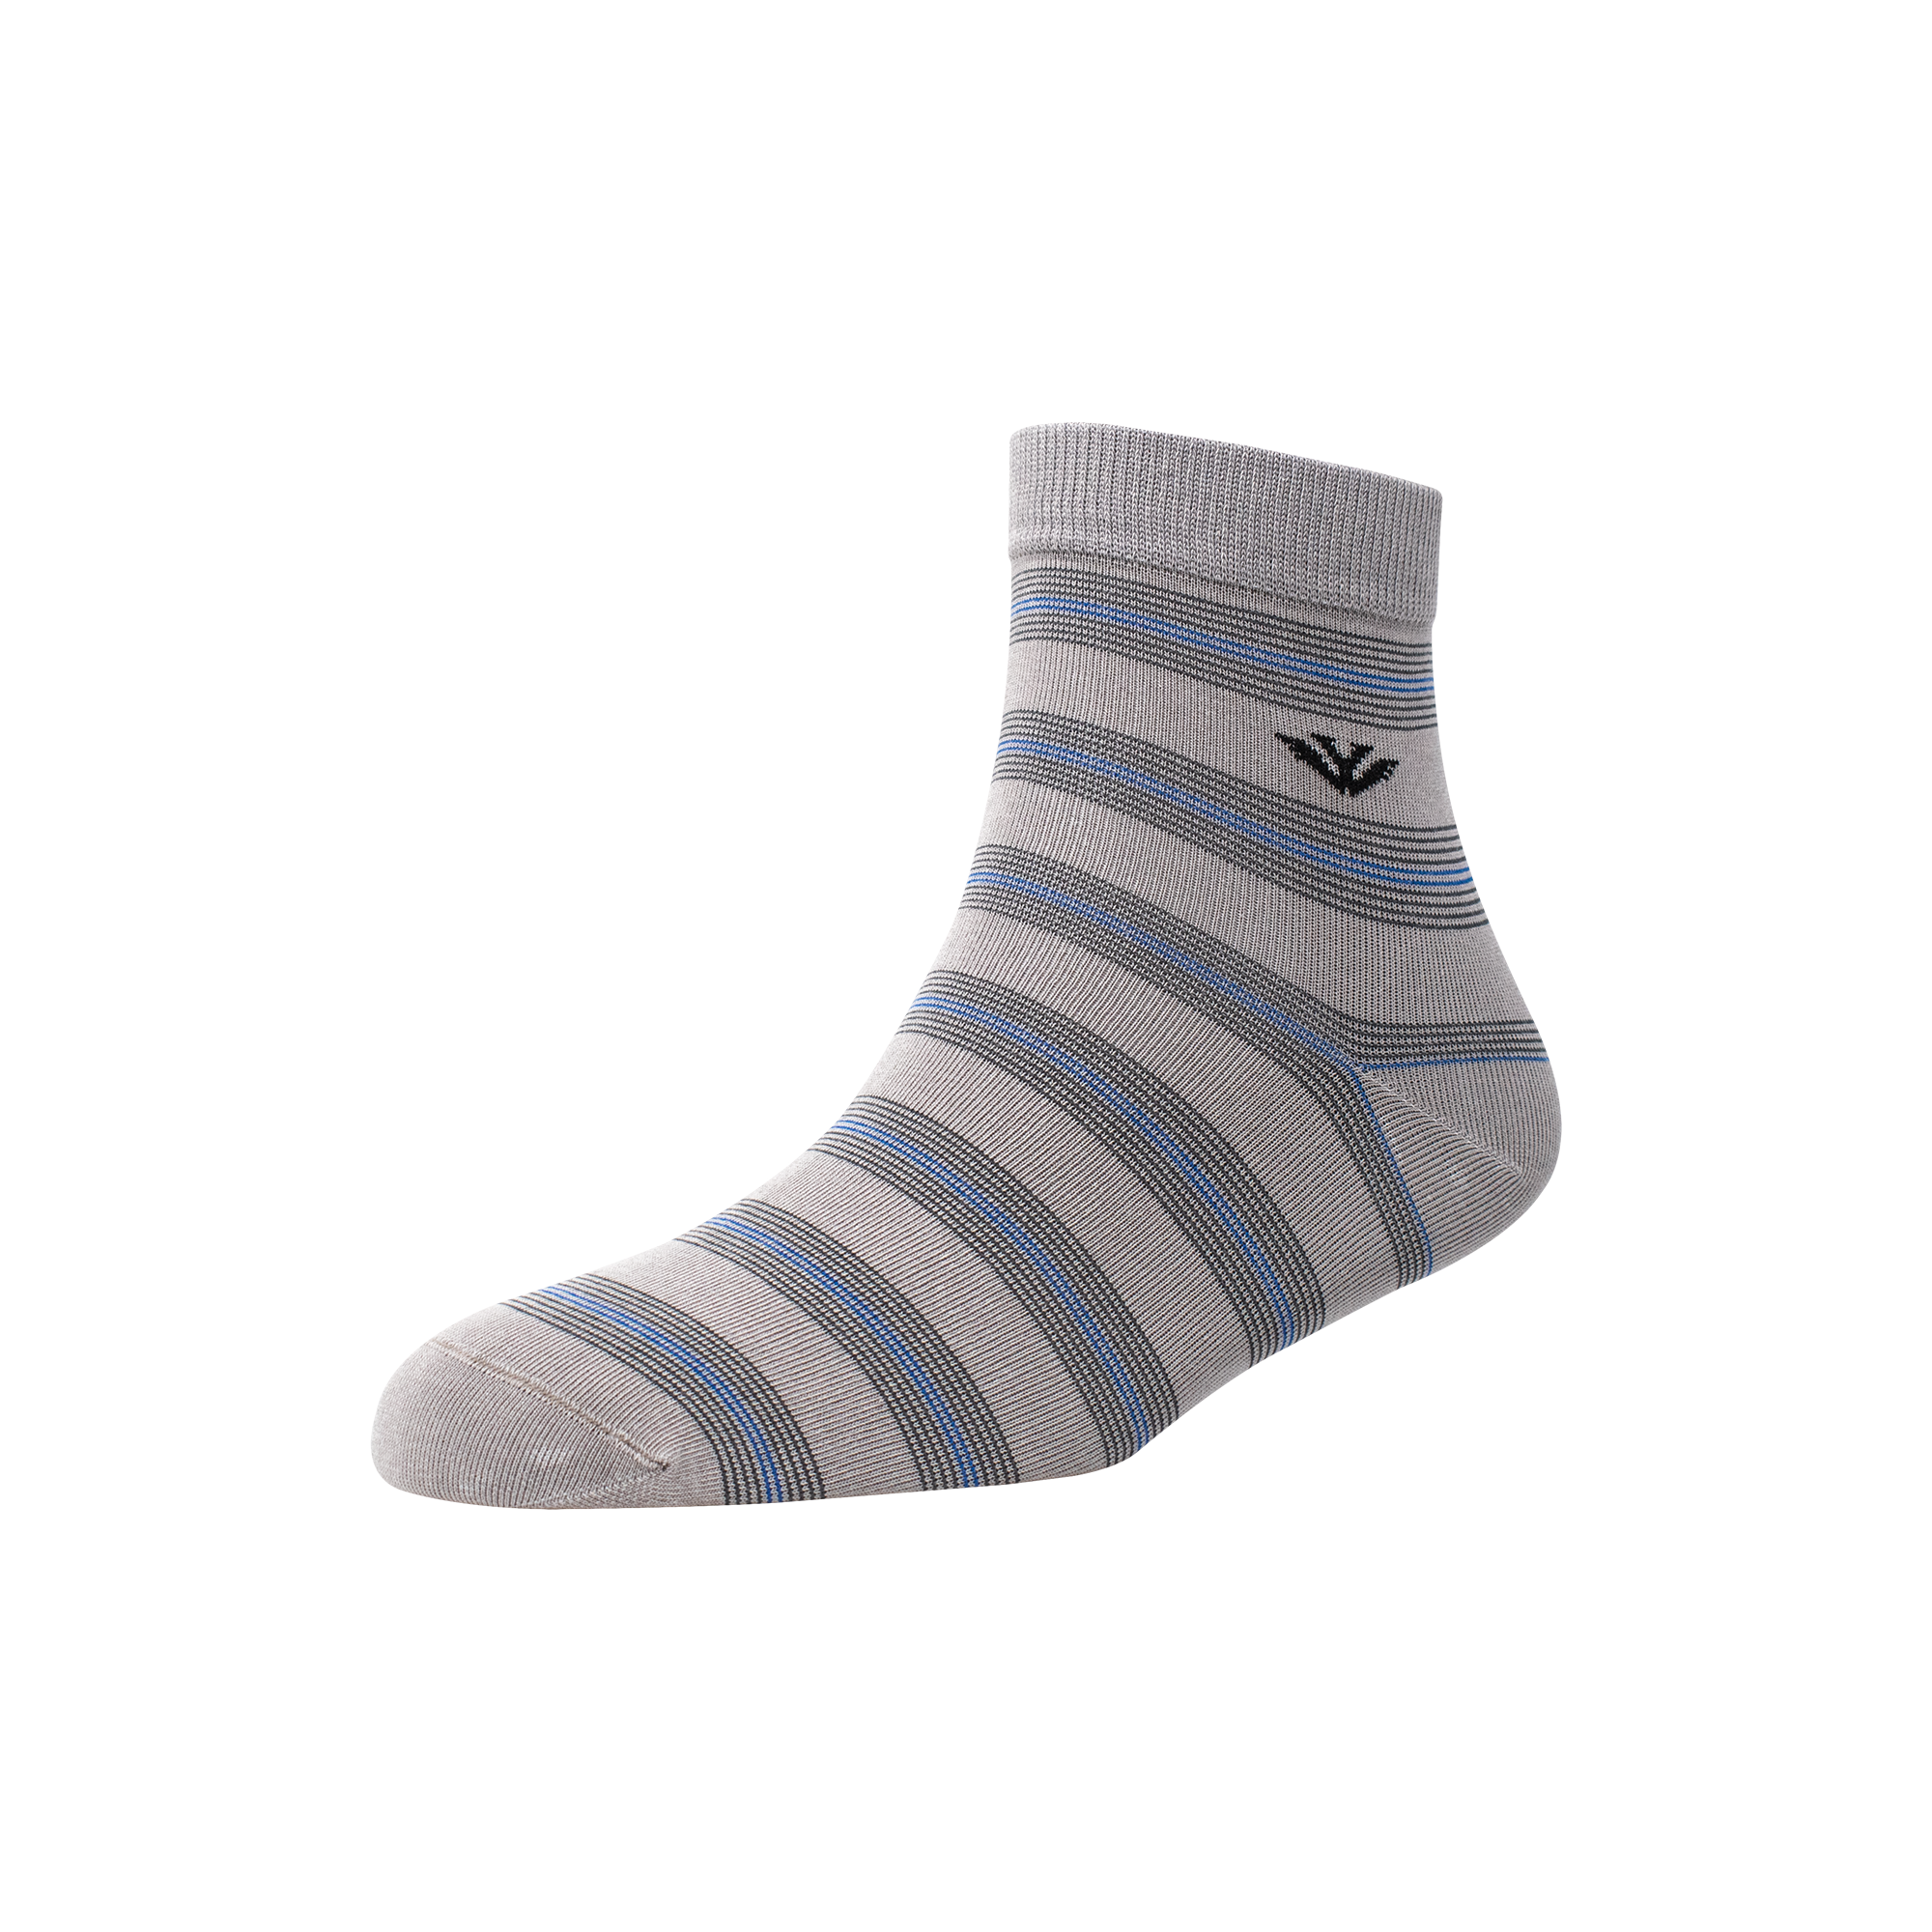 Men's AL012 Pack of 3 Ankle Socks